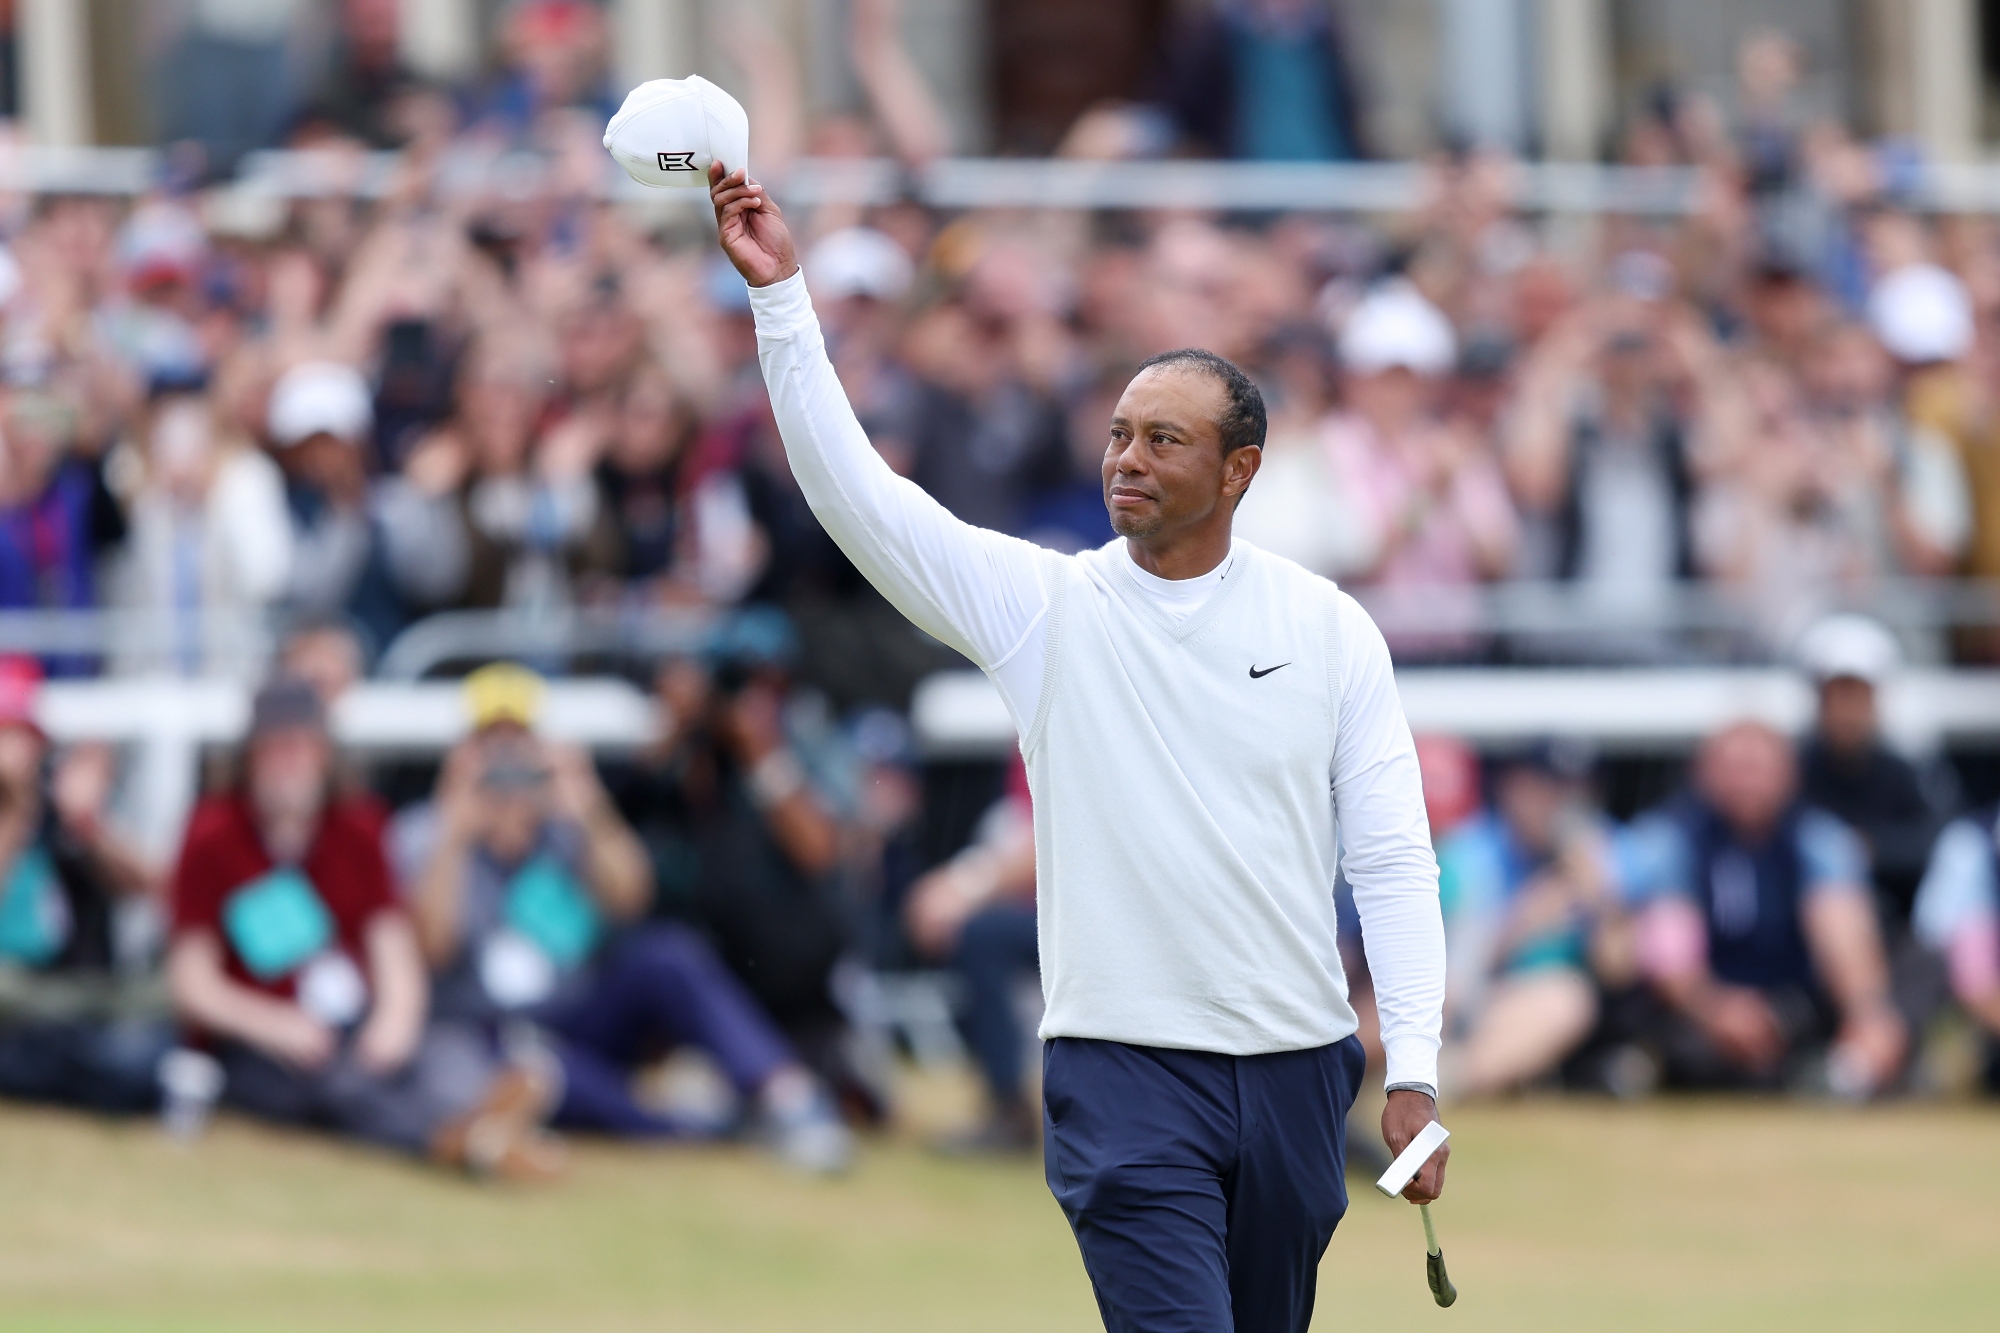 Tiger Woods courses majors quiz